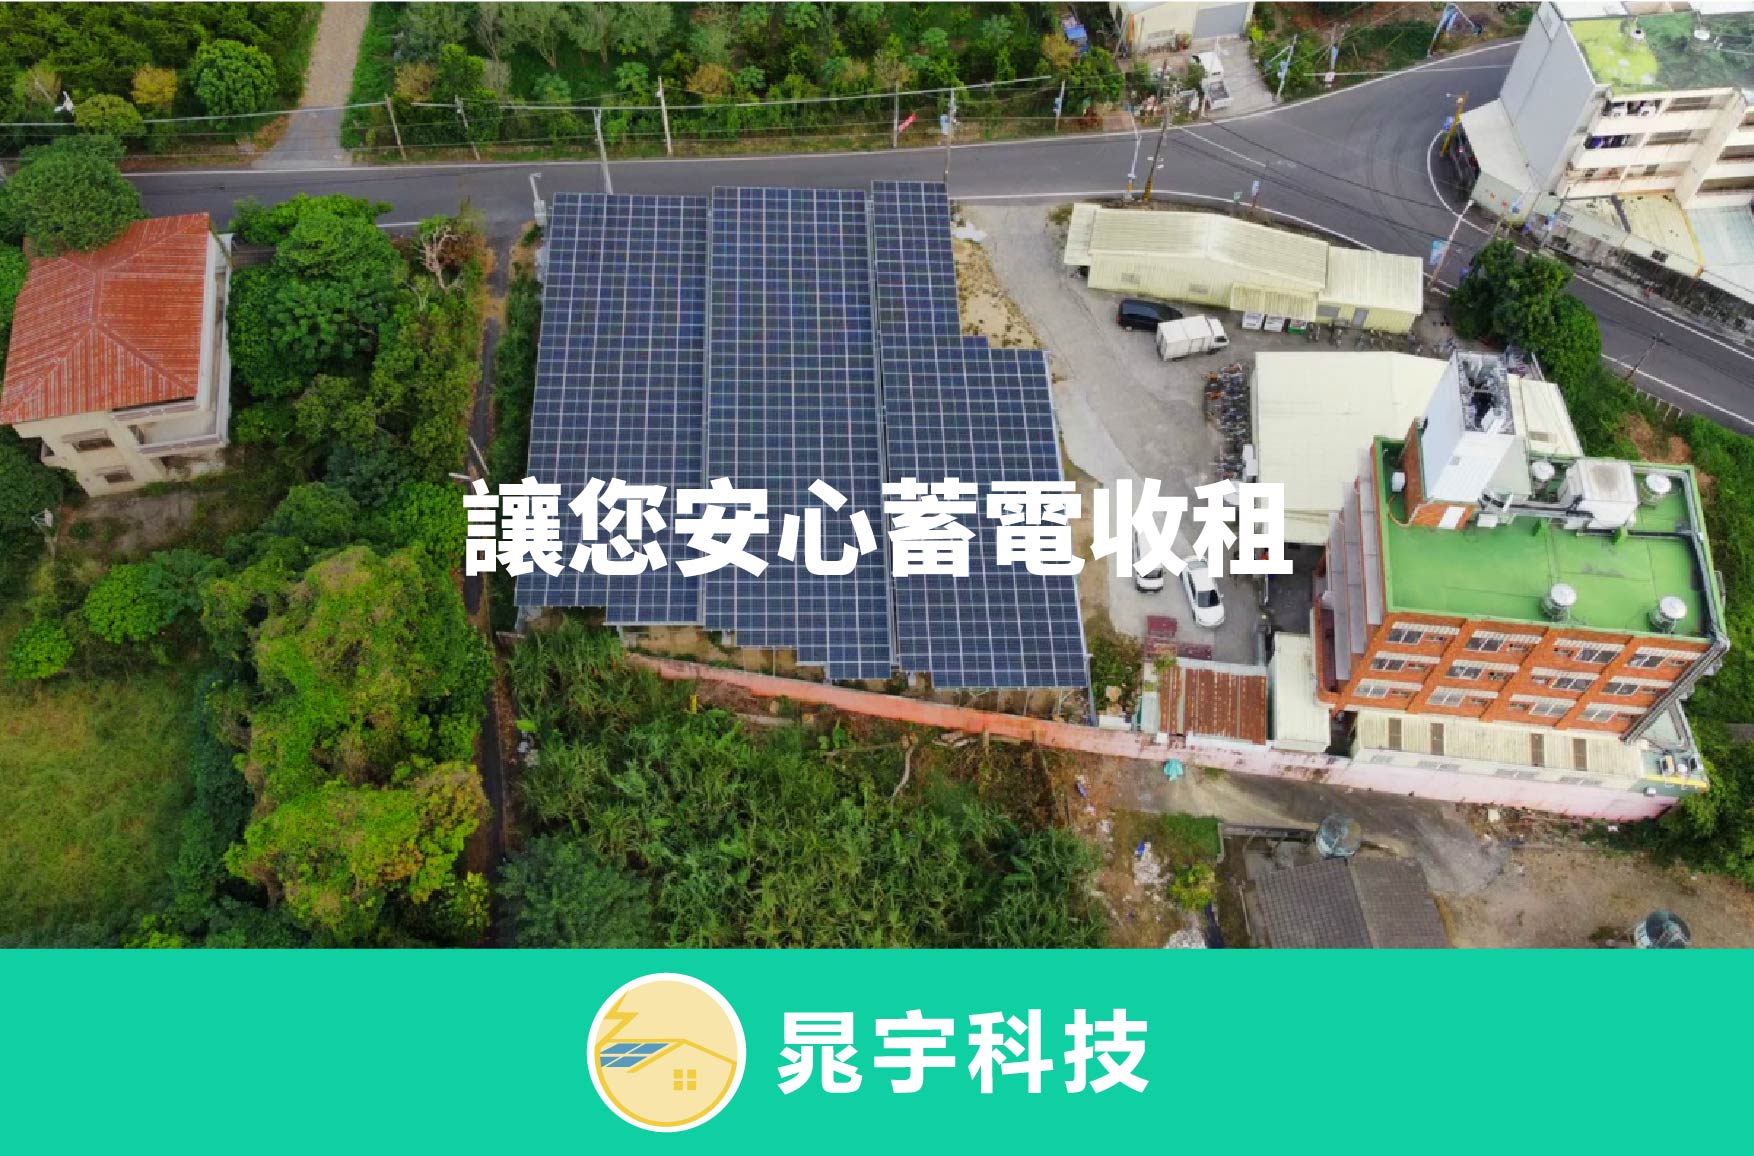 四、屋頂型太陽能設置推薦：晁宇太陽能